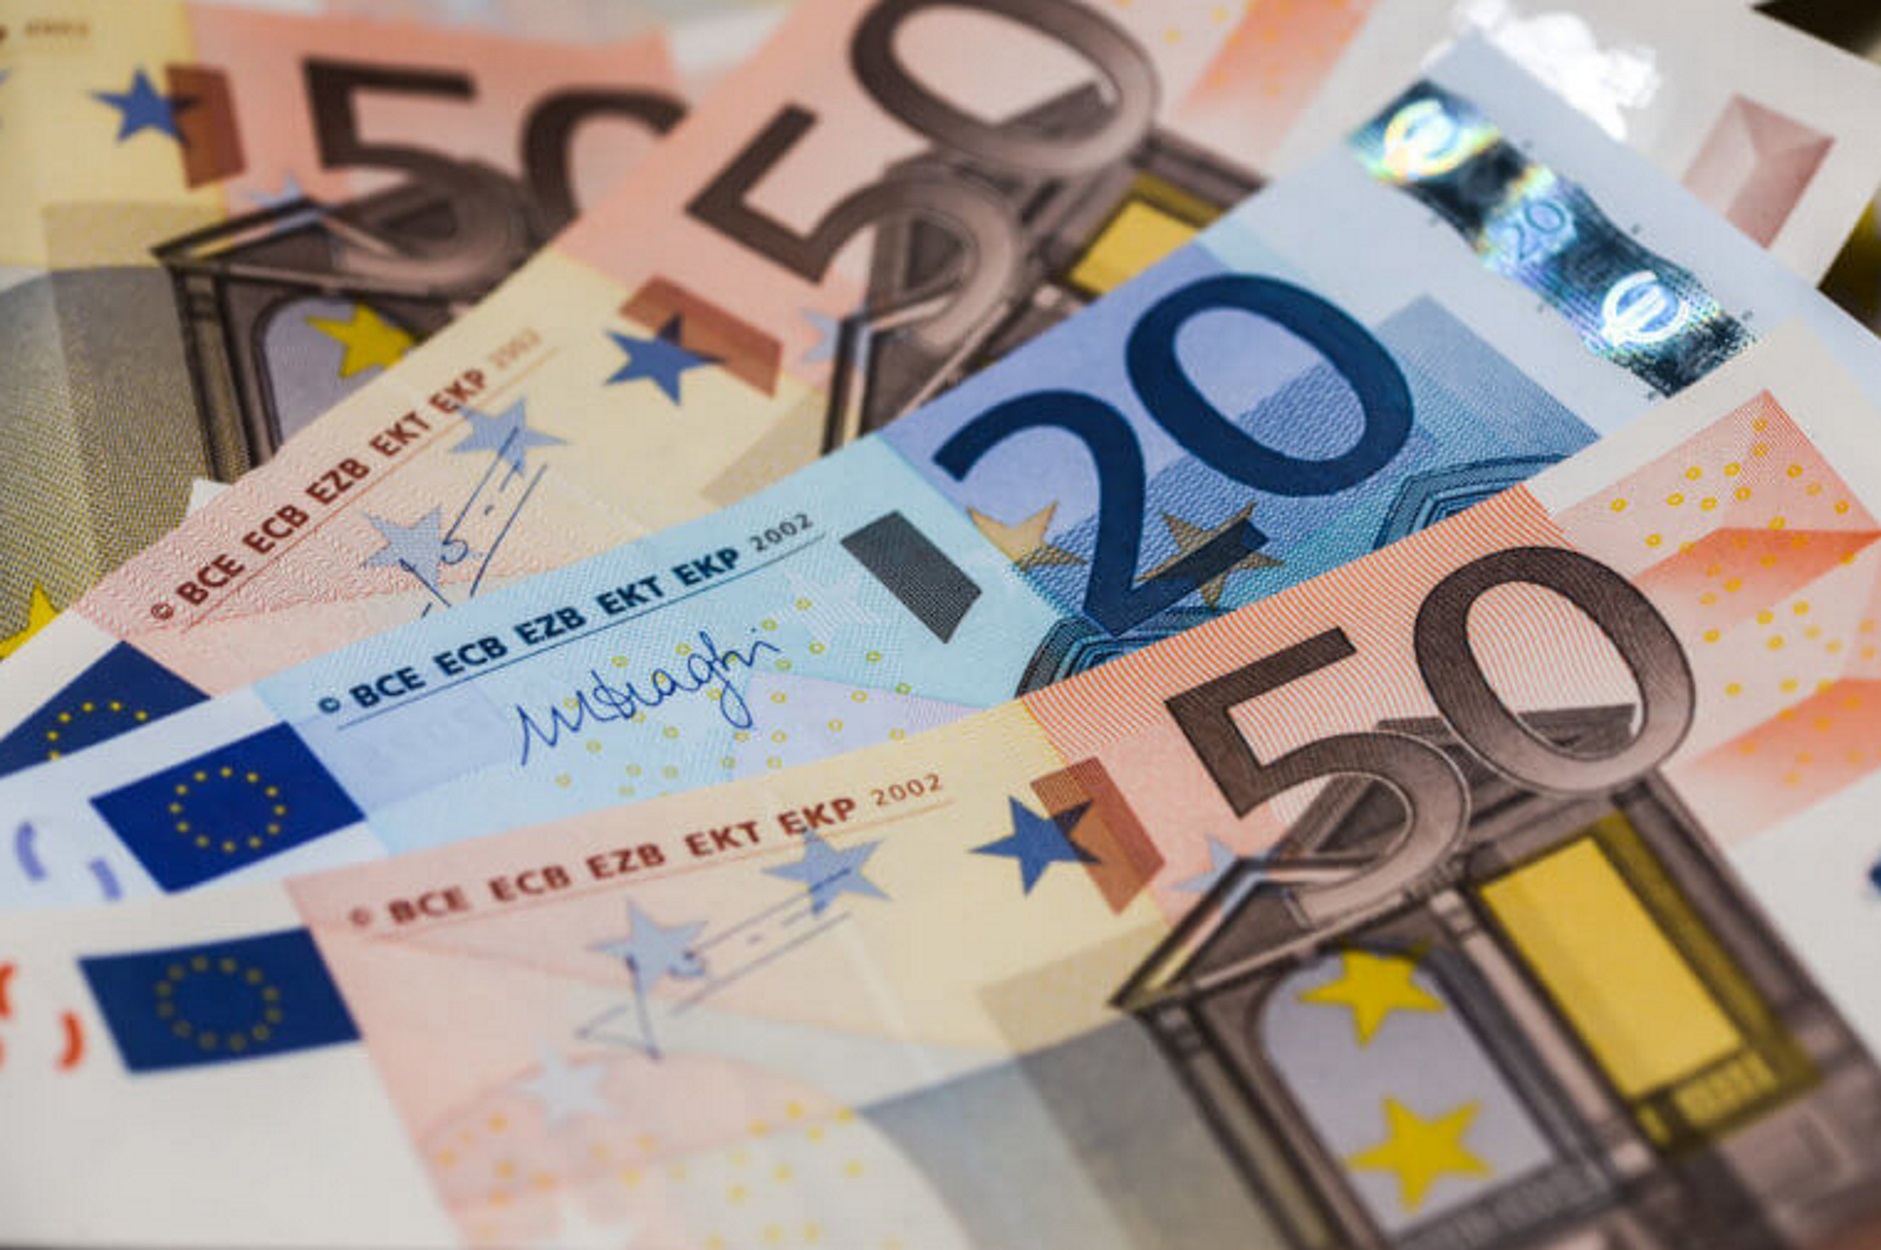 Ηράκλειο: Ο έλεγχος στην αποθήκη αποκάλυψε 710.000 ευρώ!